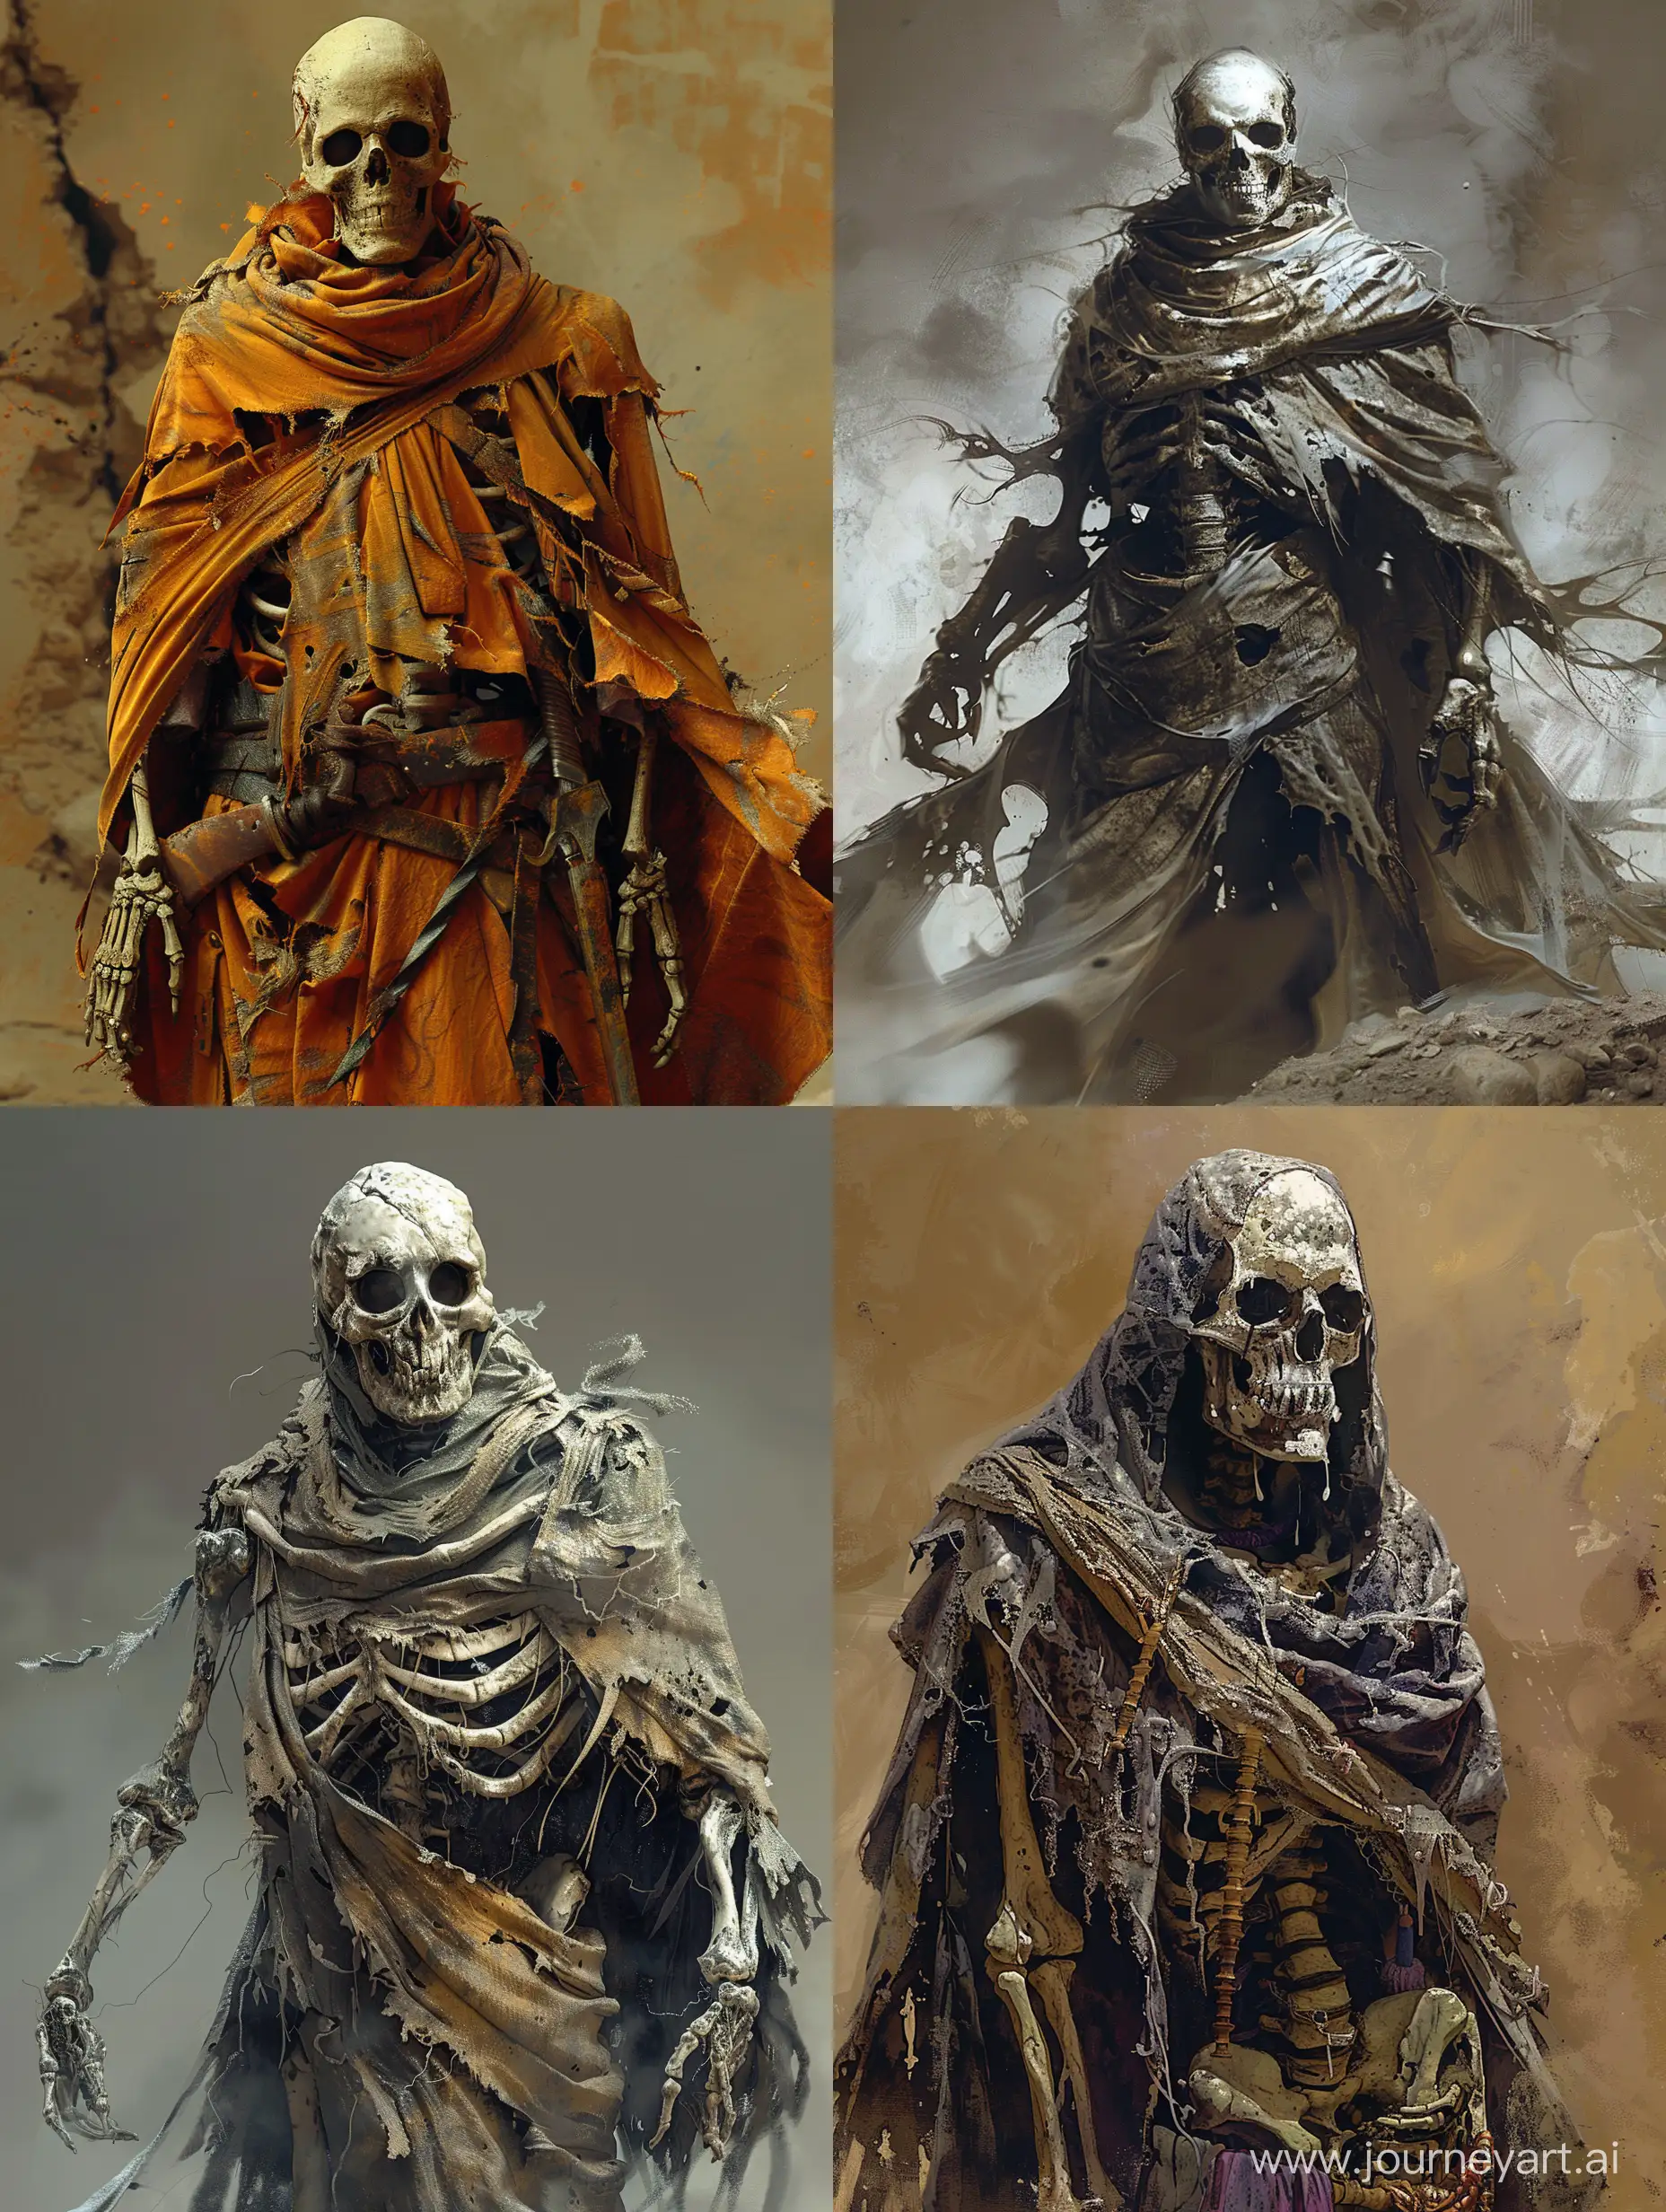 Terrifying-Skeleton-Warrior-in-Torn-Robe-Digital-Art-Fantasy-Image